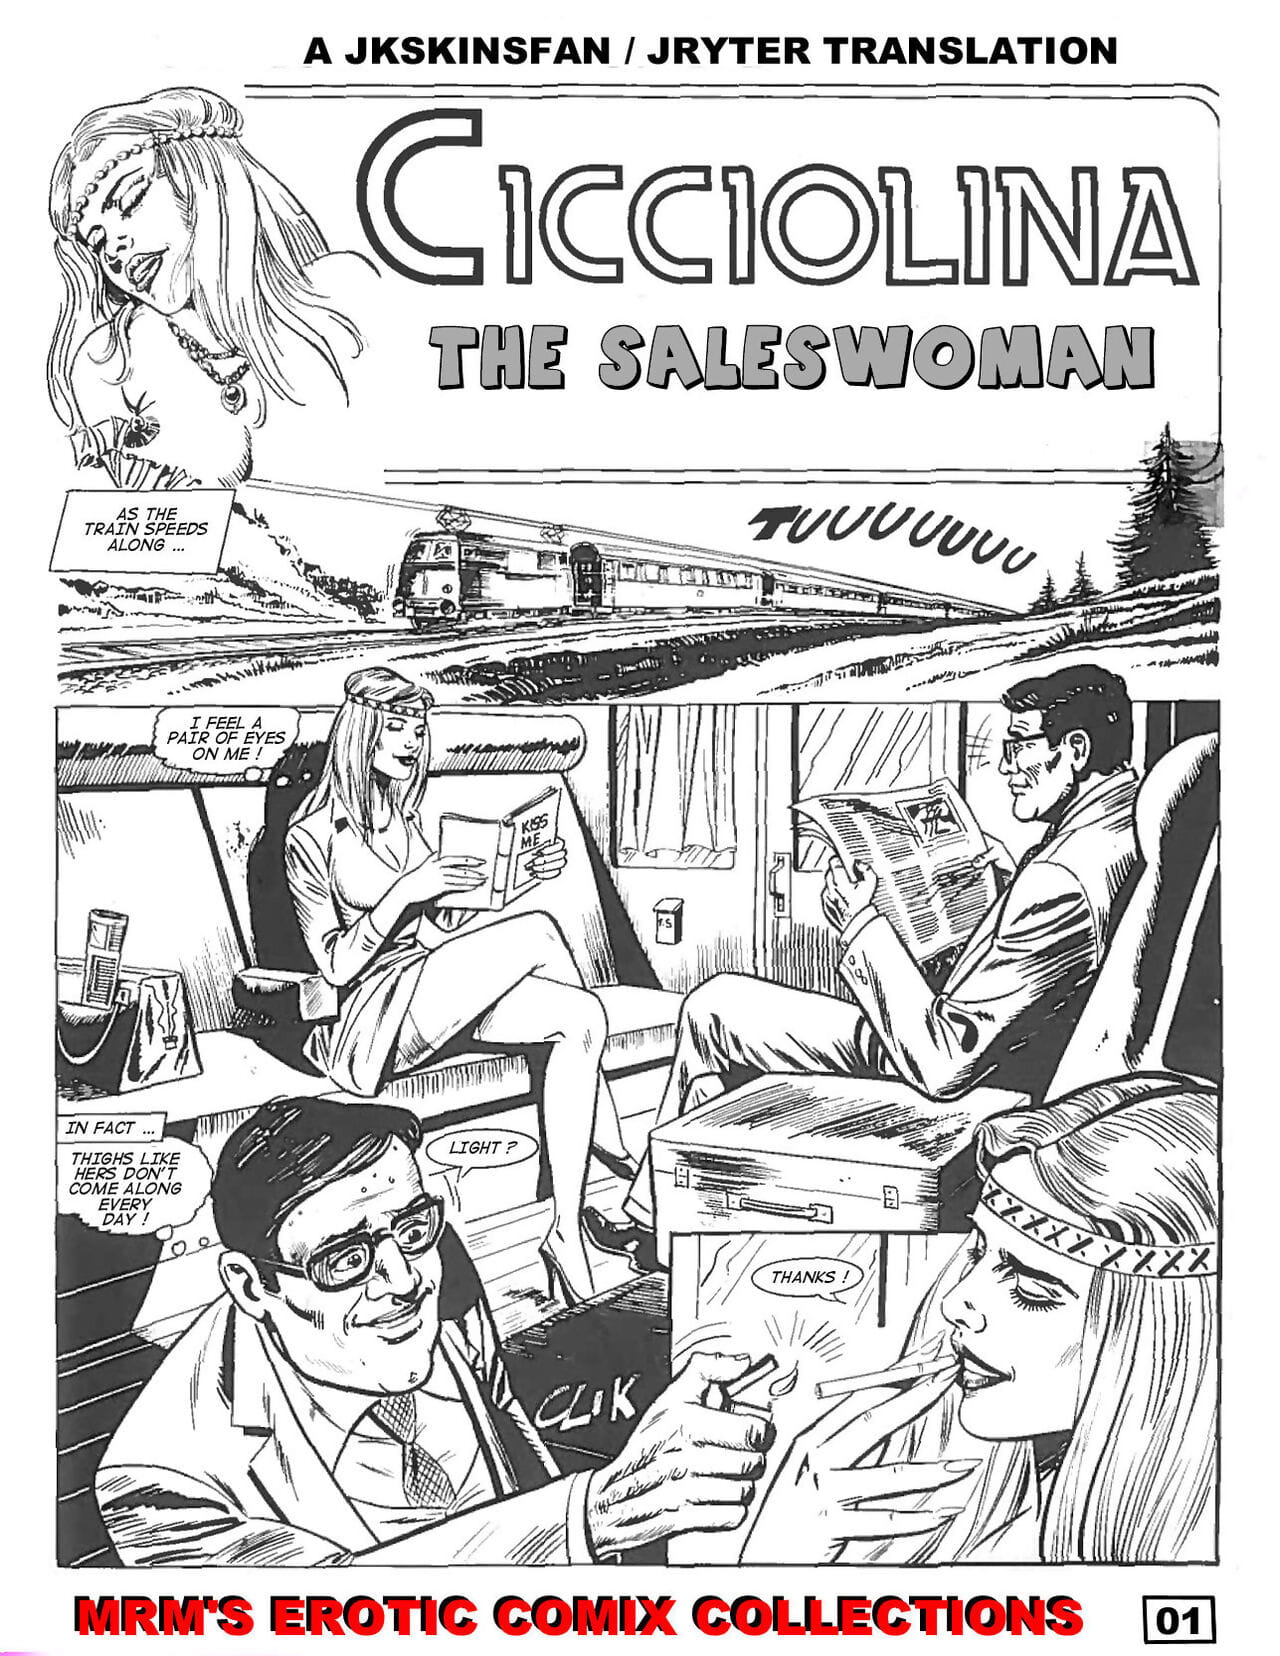 CICCIOLINA - THE SALESWOMAN - A JKSKINSFAN / JRYTER TRANSLATION page 1